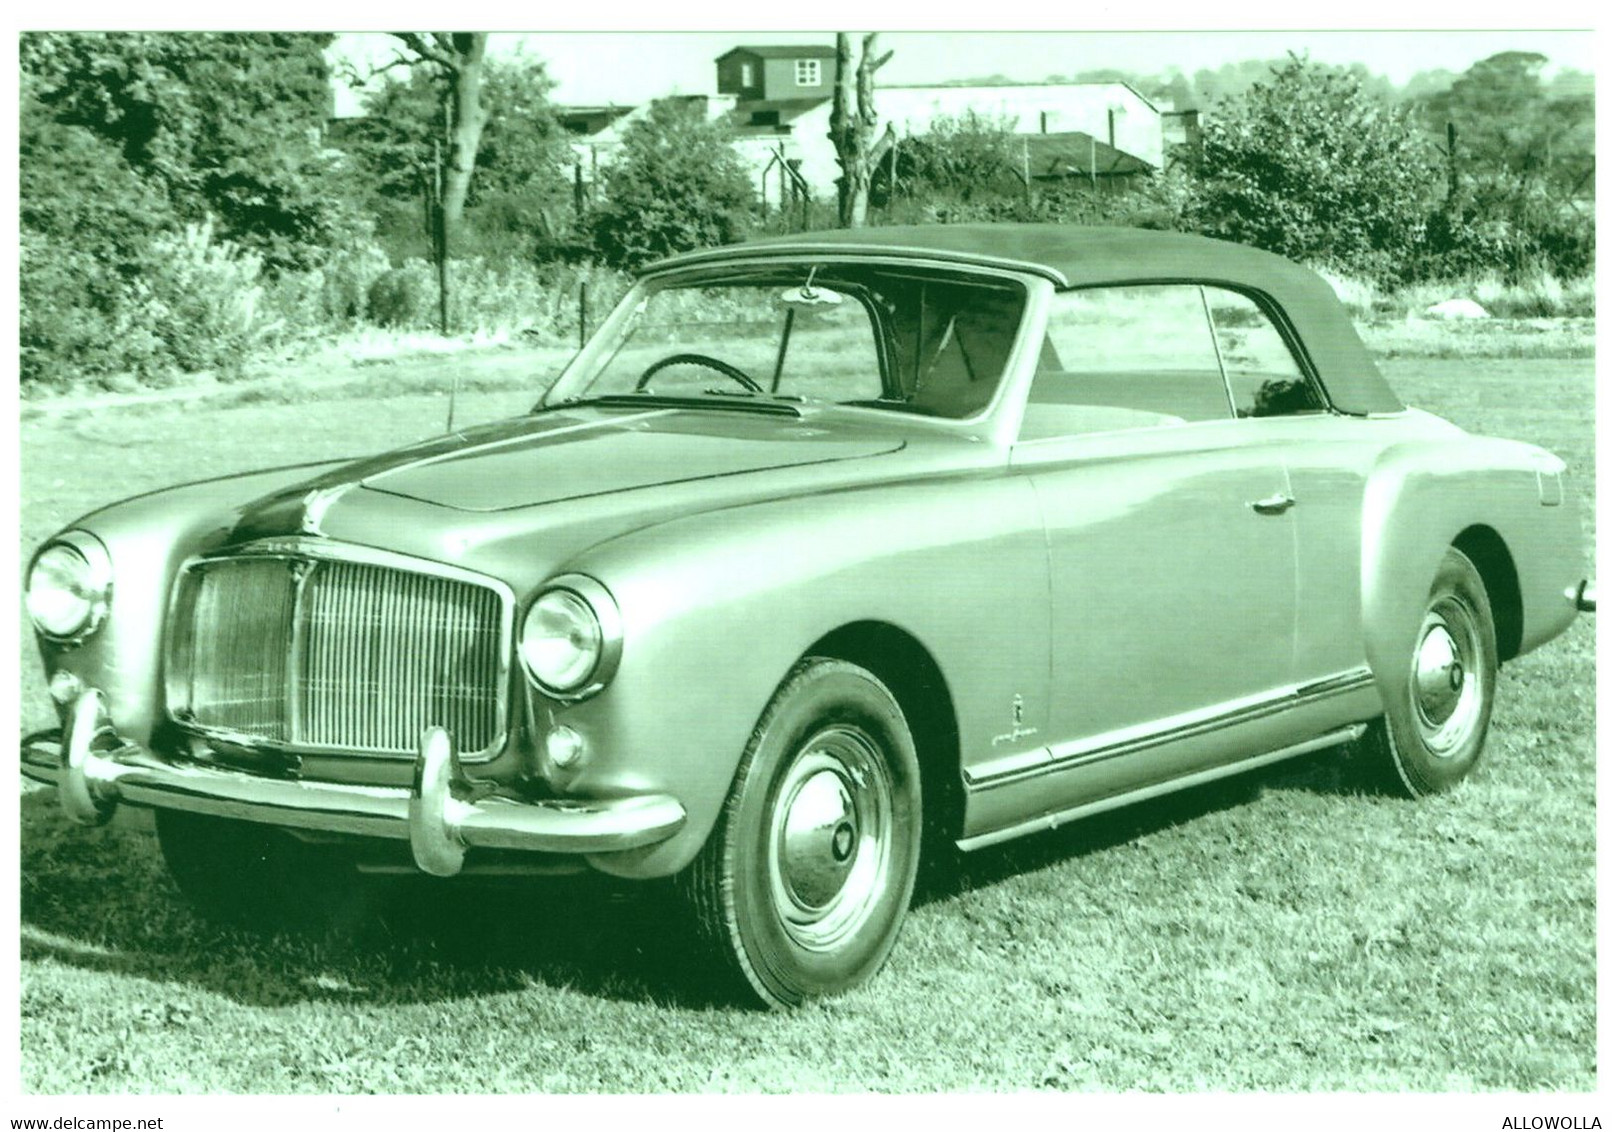 17227 " ROVER P4 CONVERTIBLE PININFARINA (1953)  " RIPRODUZIONE SU CARTA FOTOGRAFICA-FOTO B/N Cm. 10,2 X 15,2 - Automobili